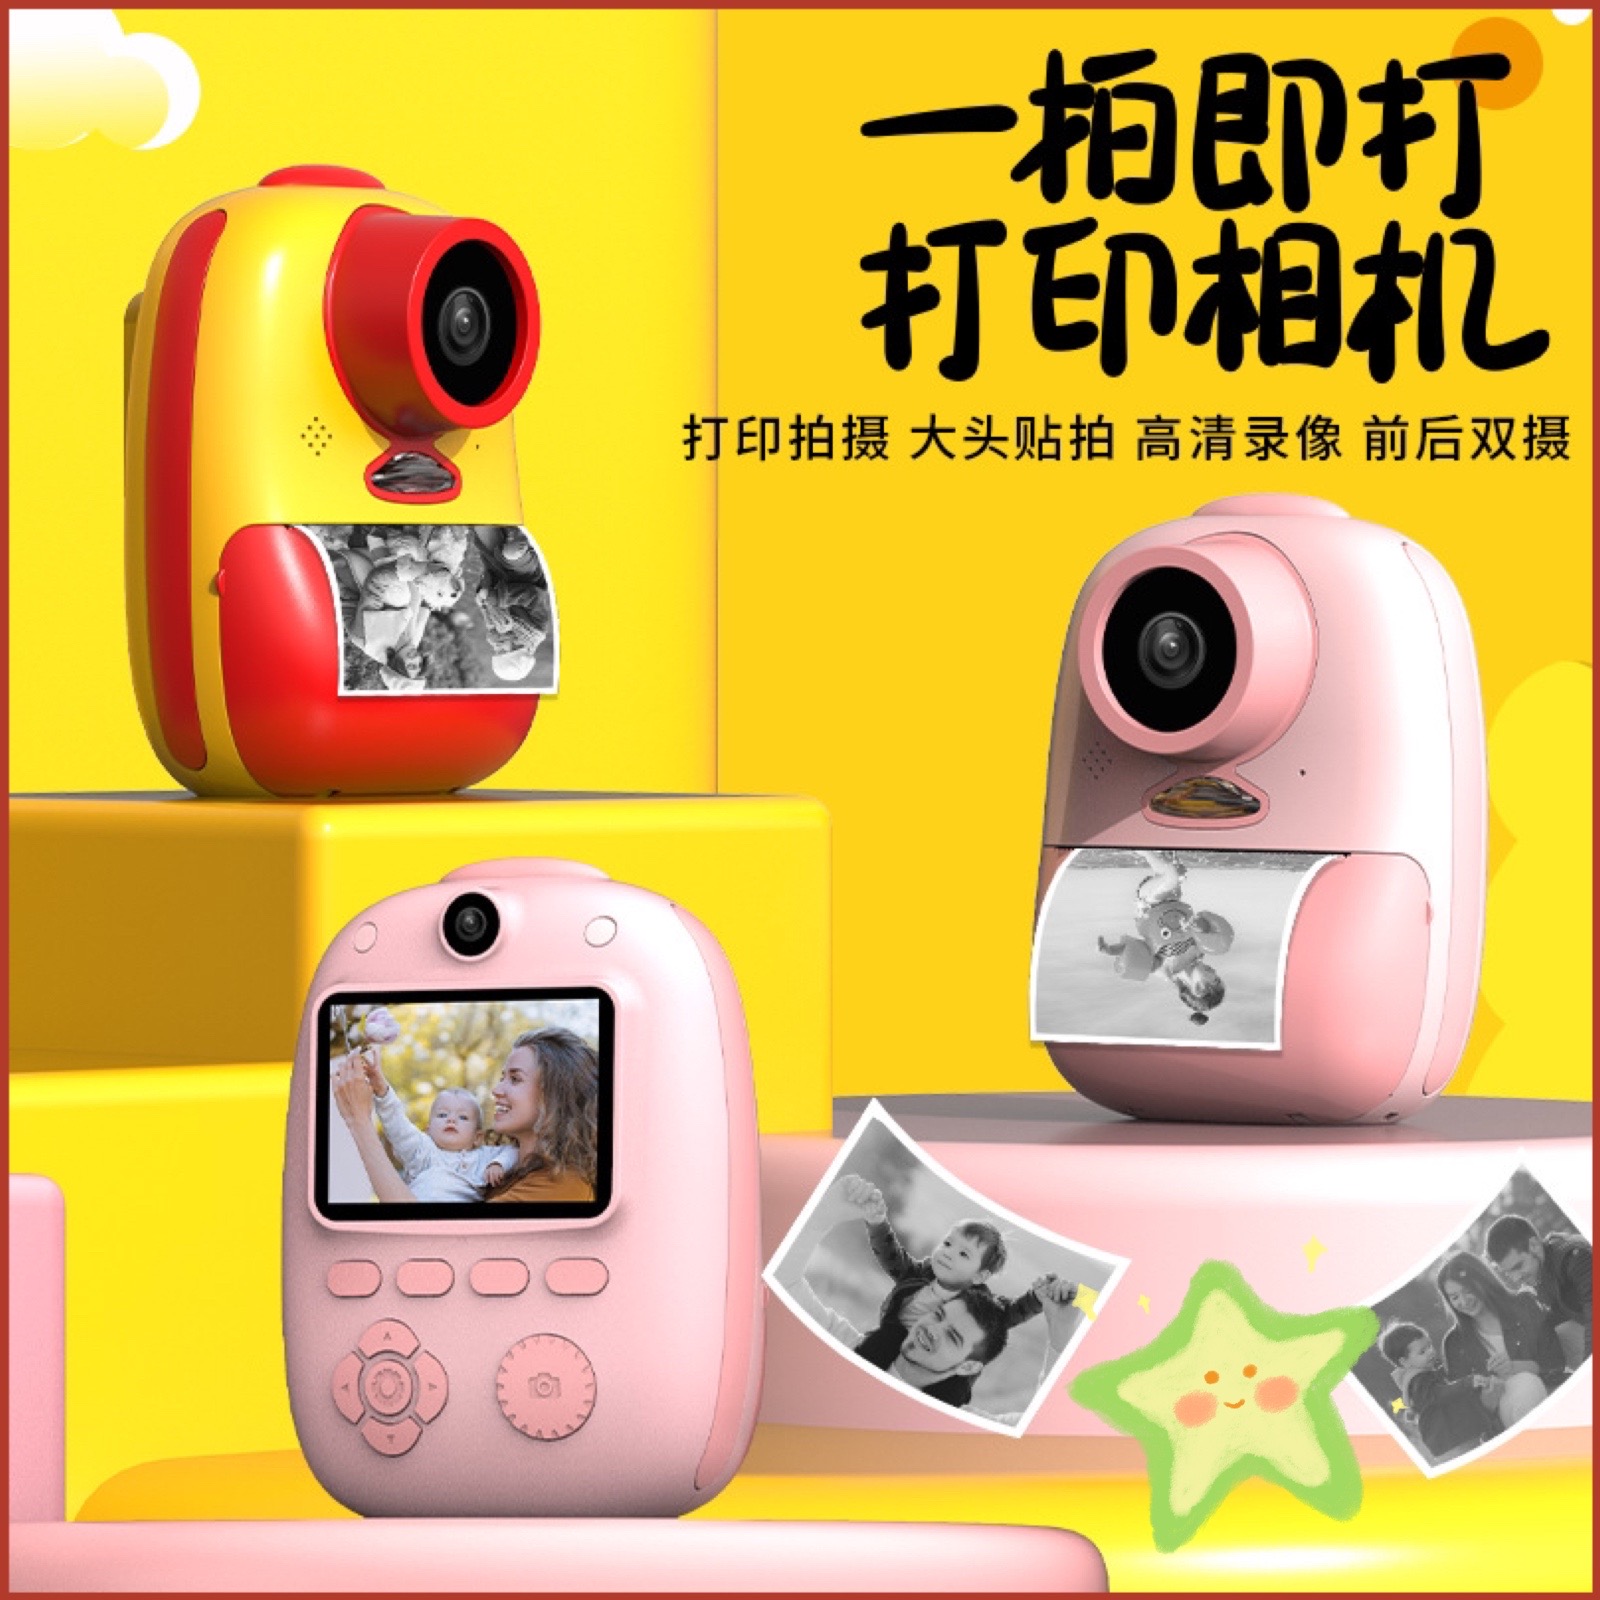 新款儿童数码相机拍立得玩具可照打印录像涂鸦男女孩学生礼物入门